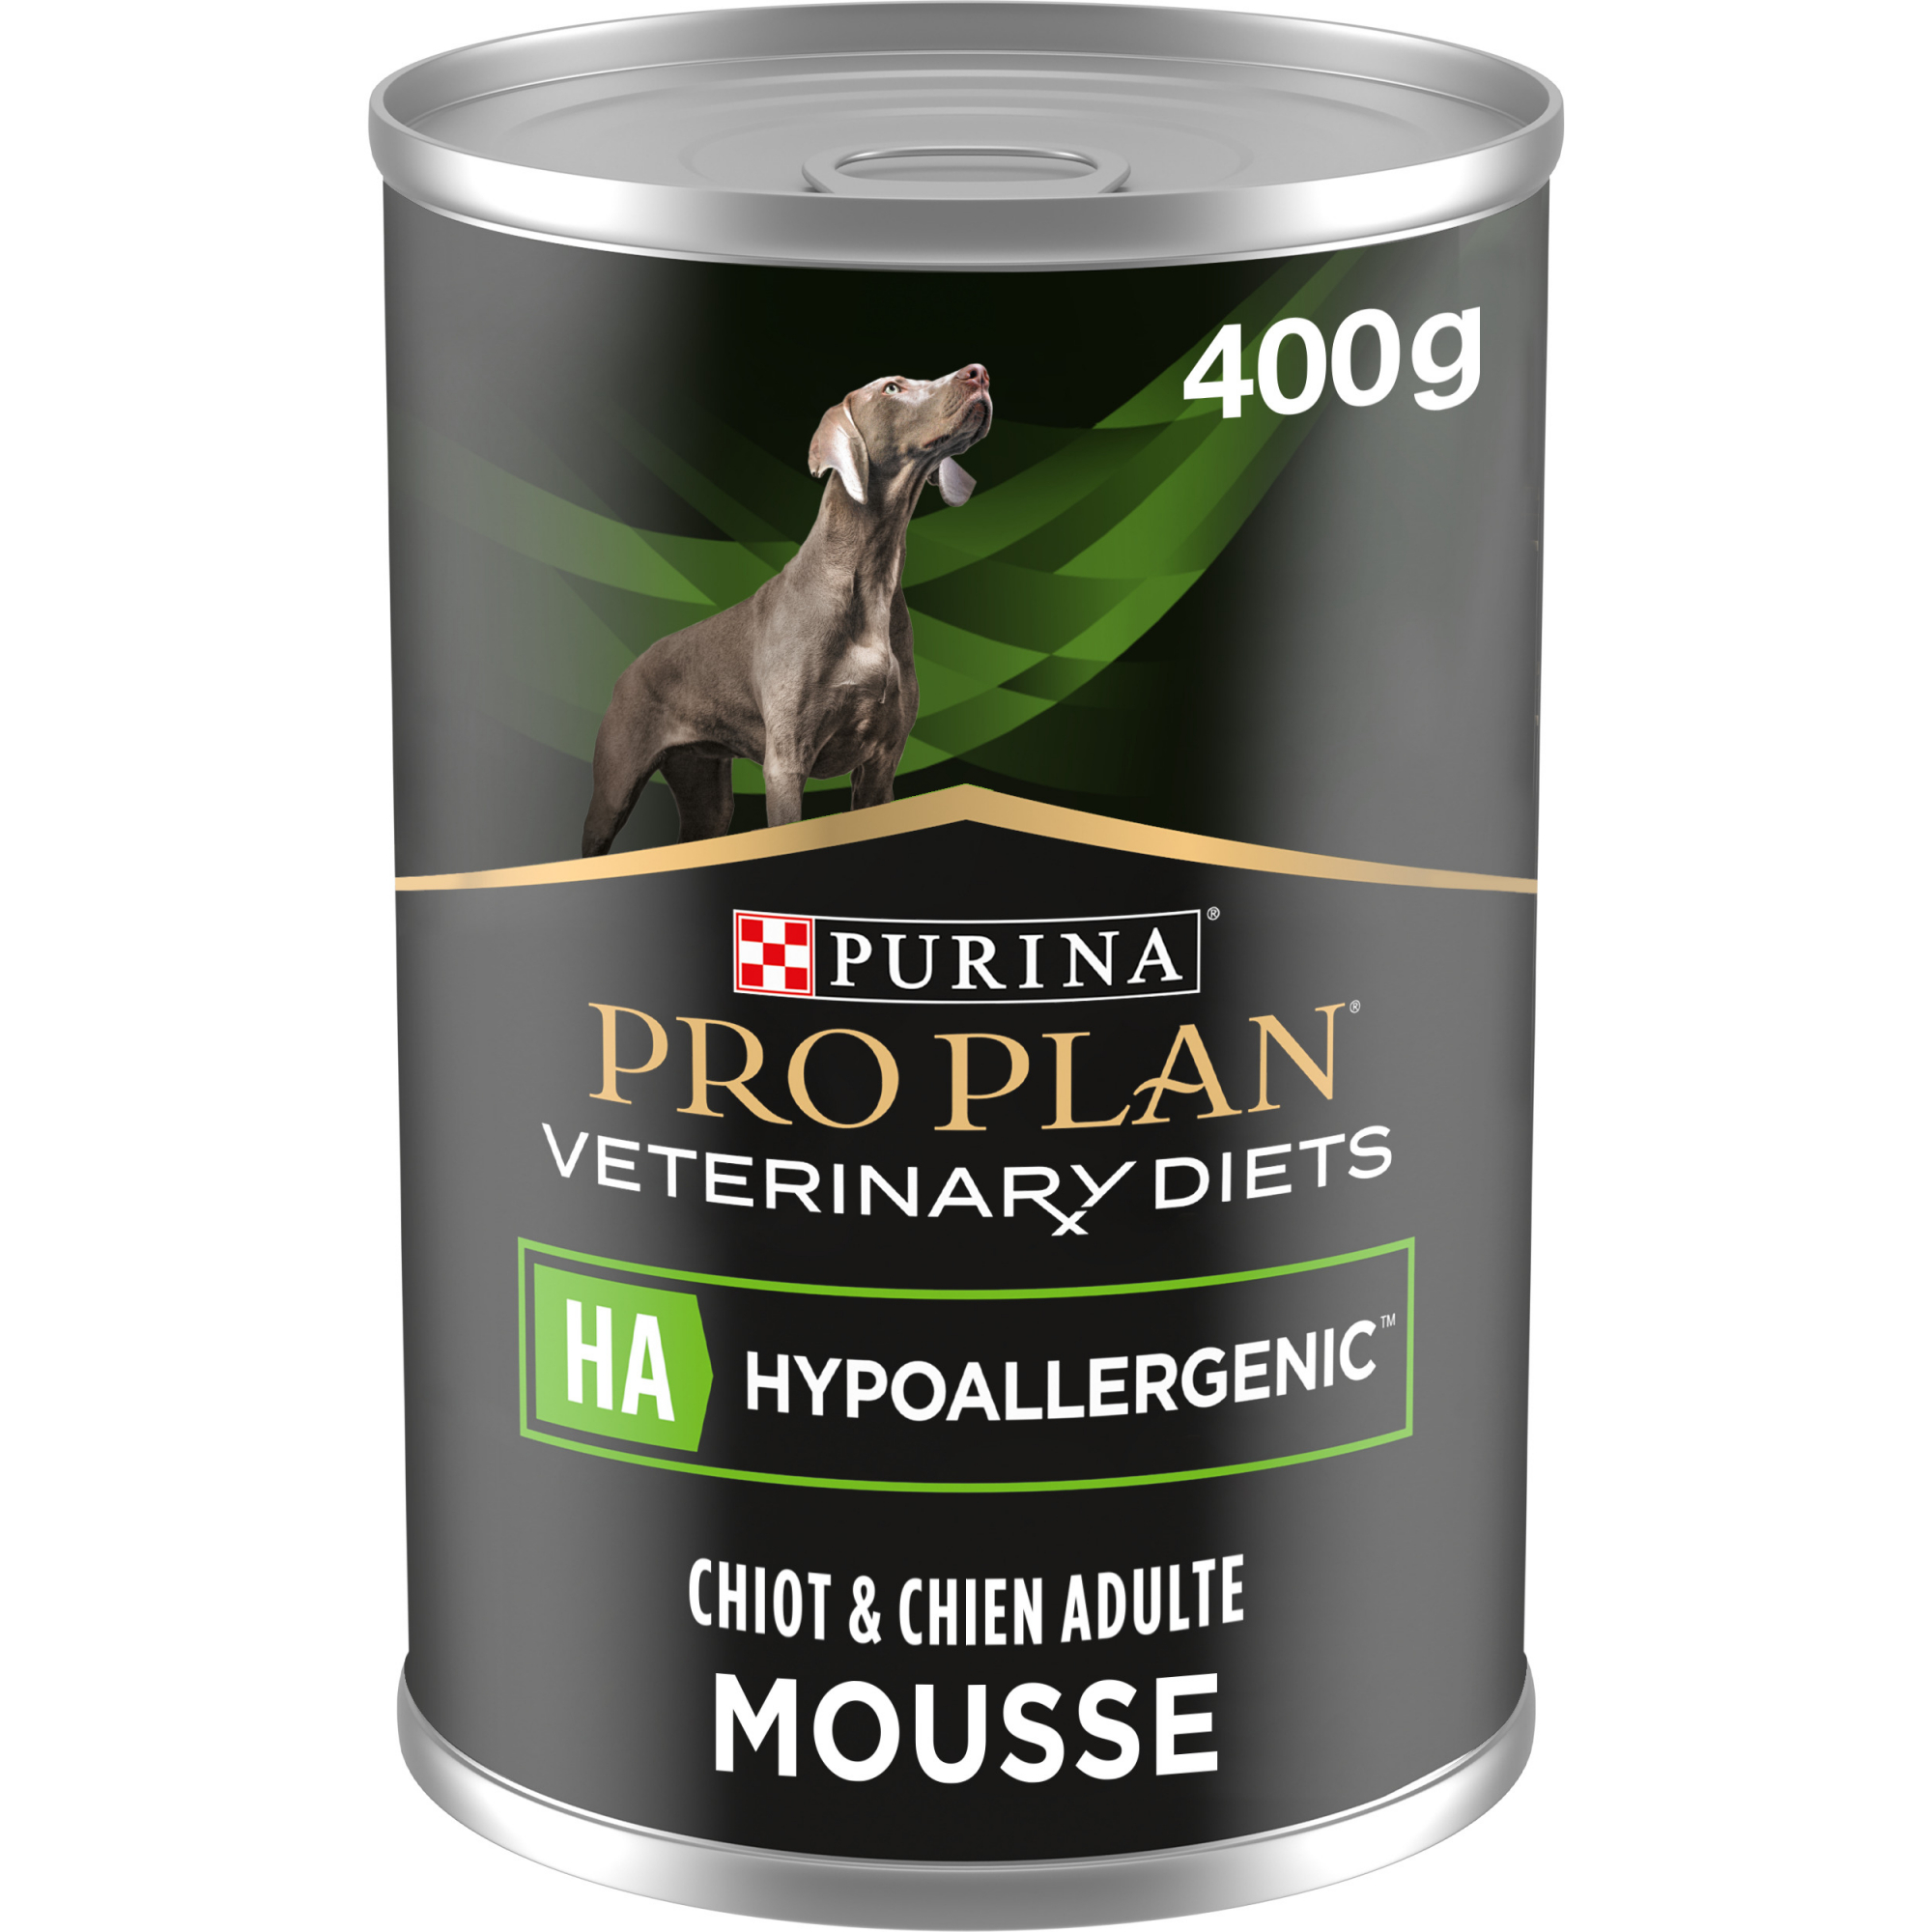 Purina Pro Plan Veterinary Diets HA Hypoallergenic comida húmeda para perros y cachorros